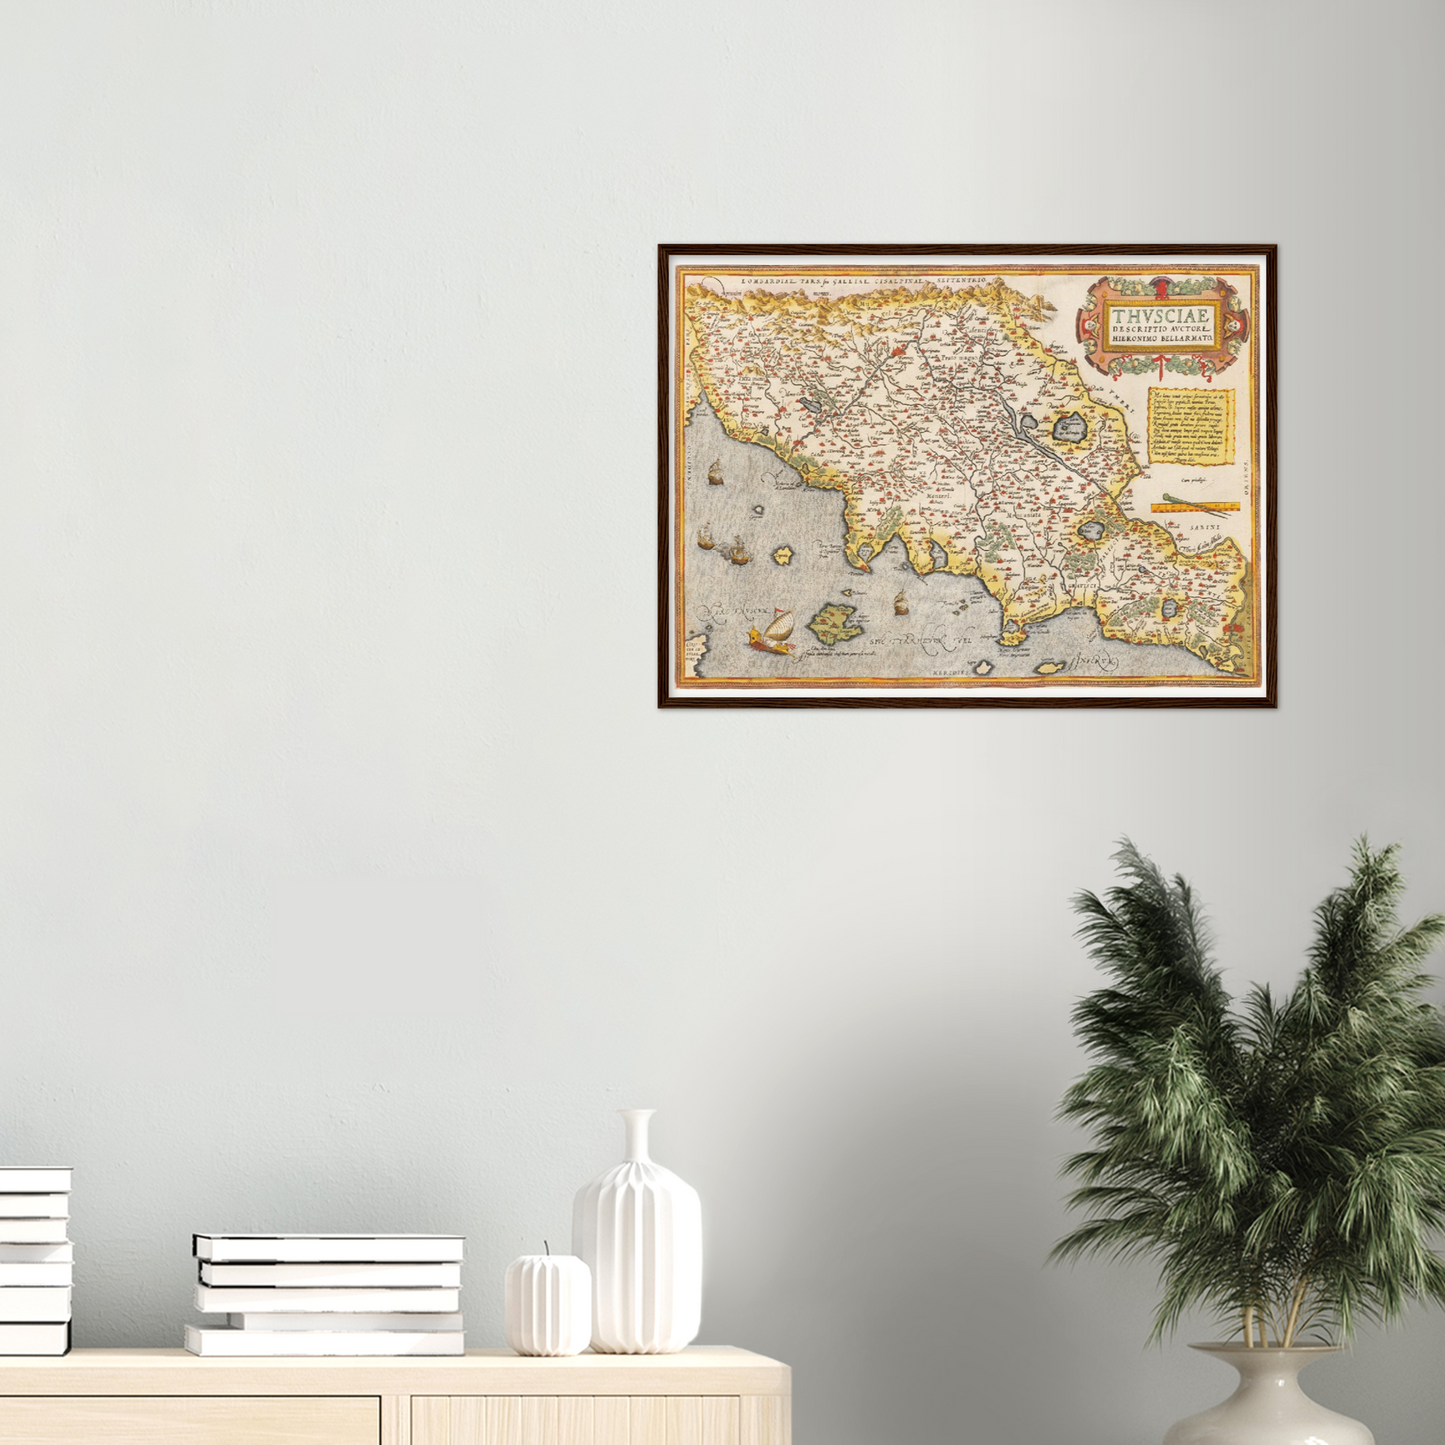 Historische Landkarte Toskana um 1609